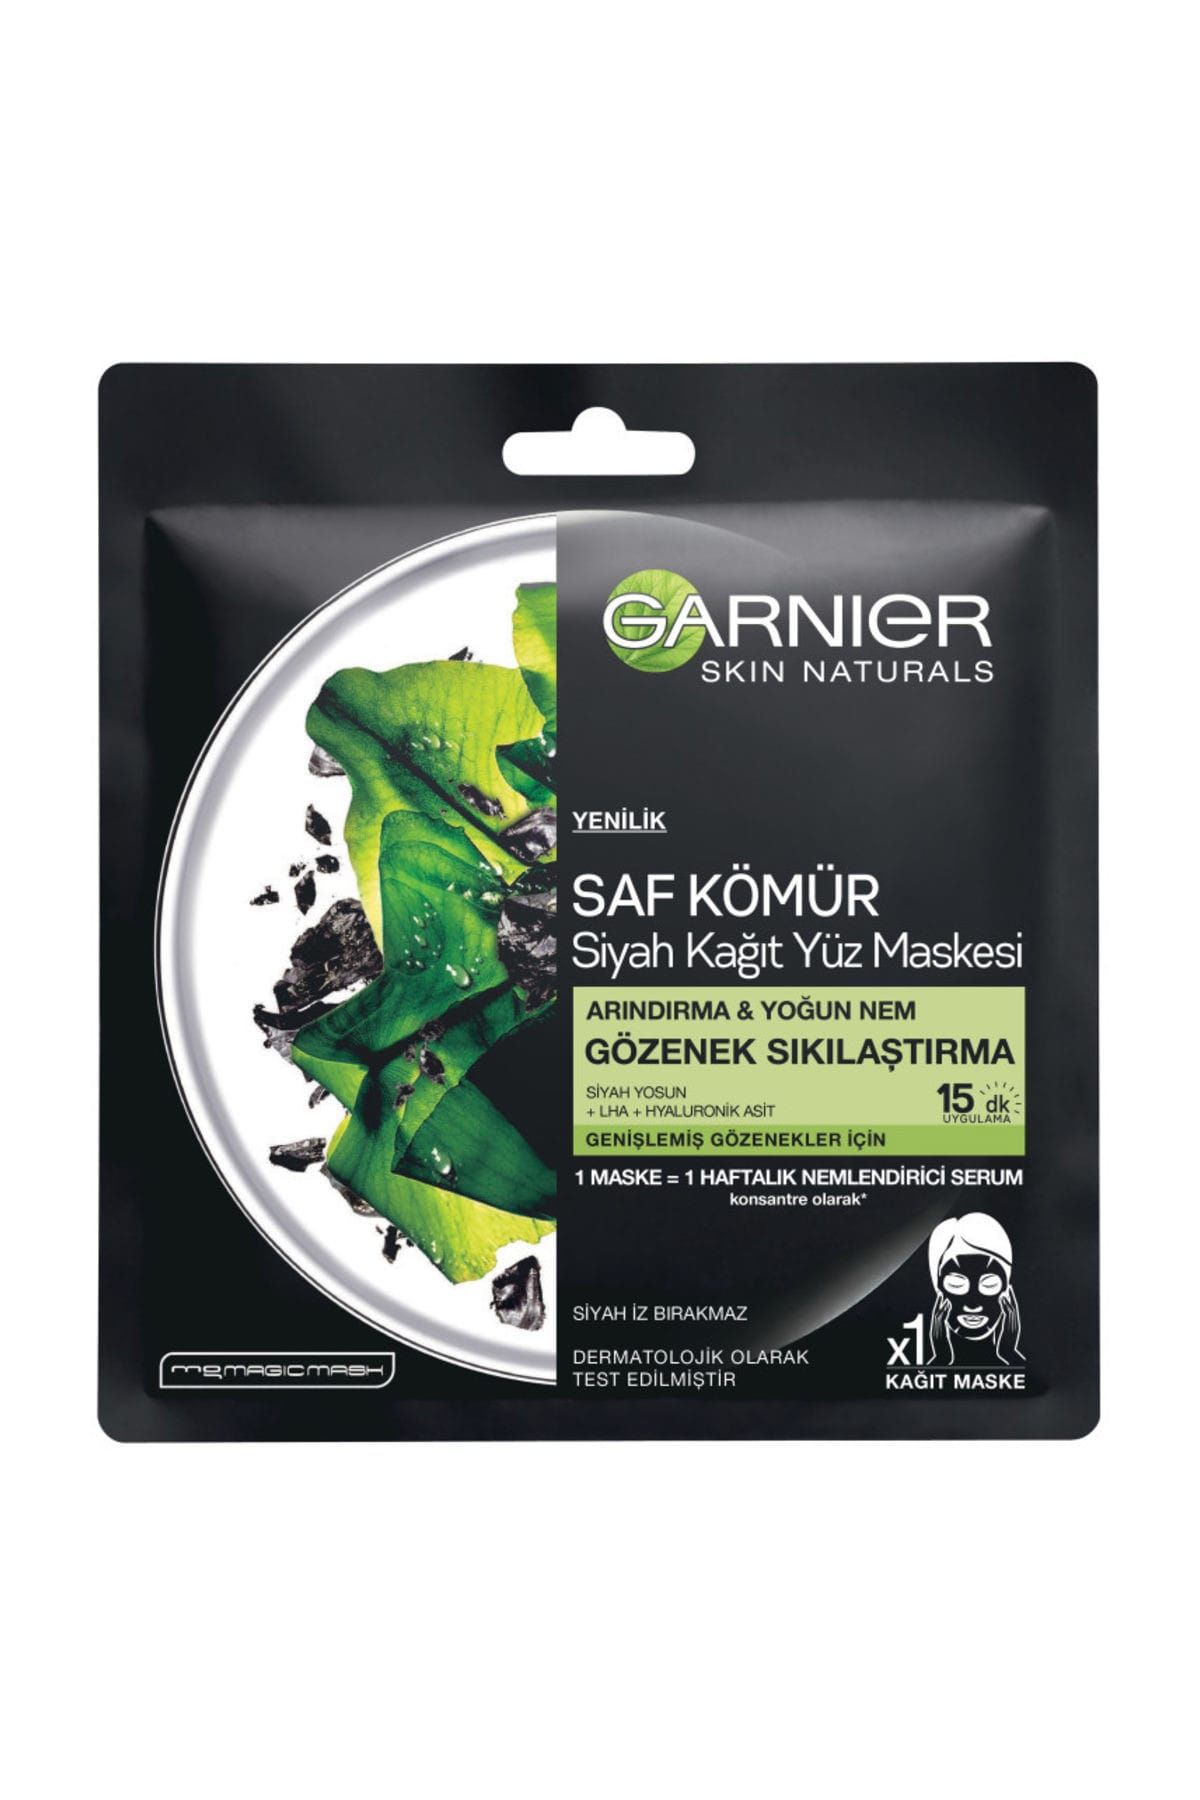 Garnier Saf Kömür Gözenek Sıkılaştırıcı Kağıt Maske